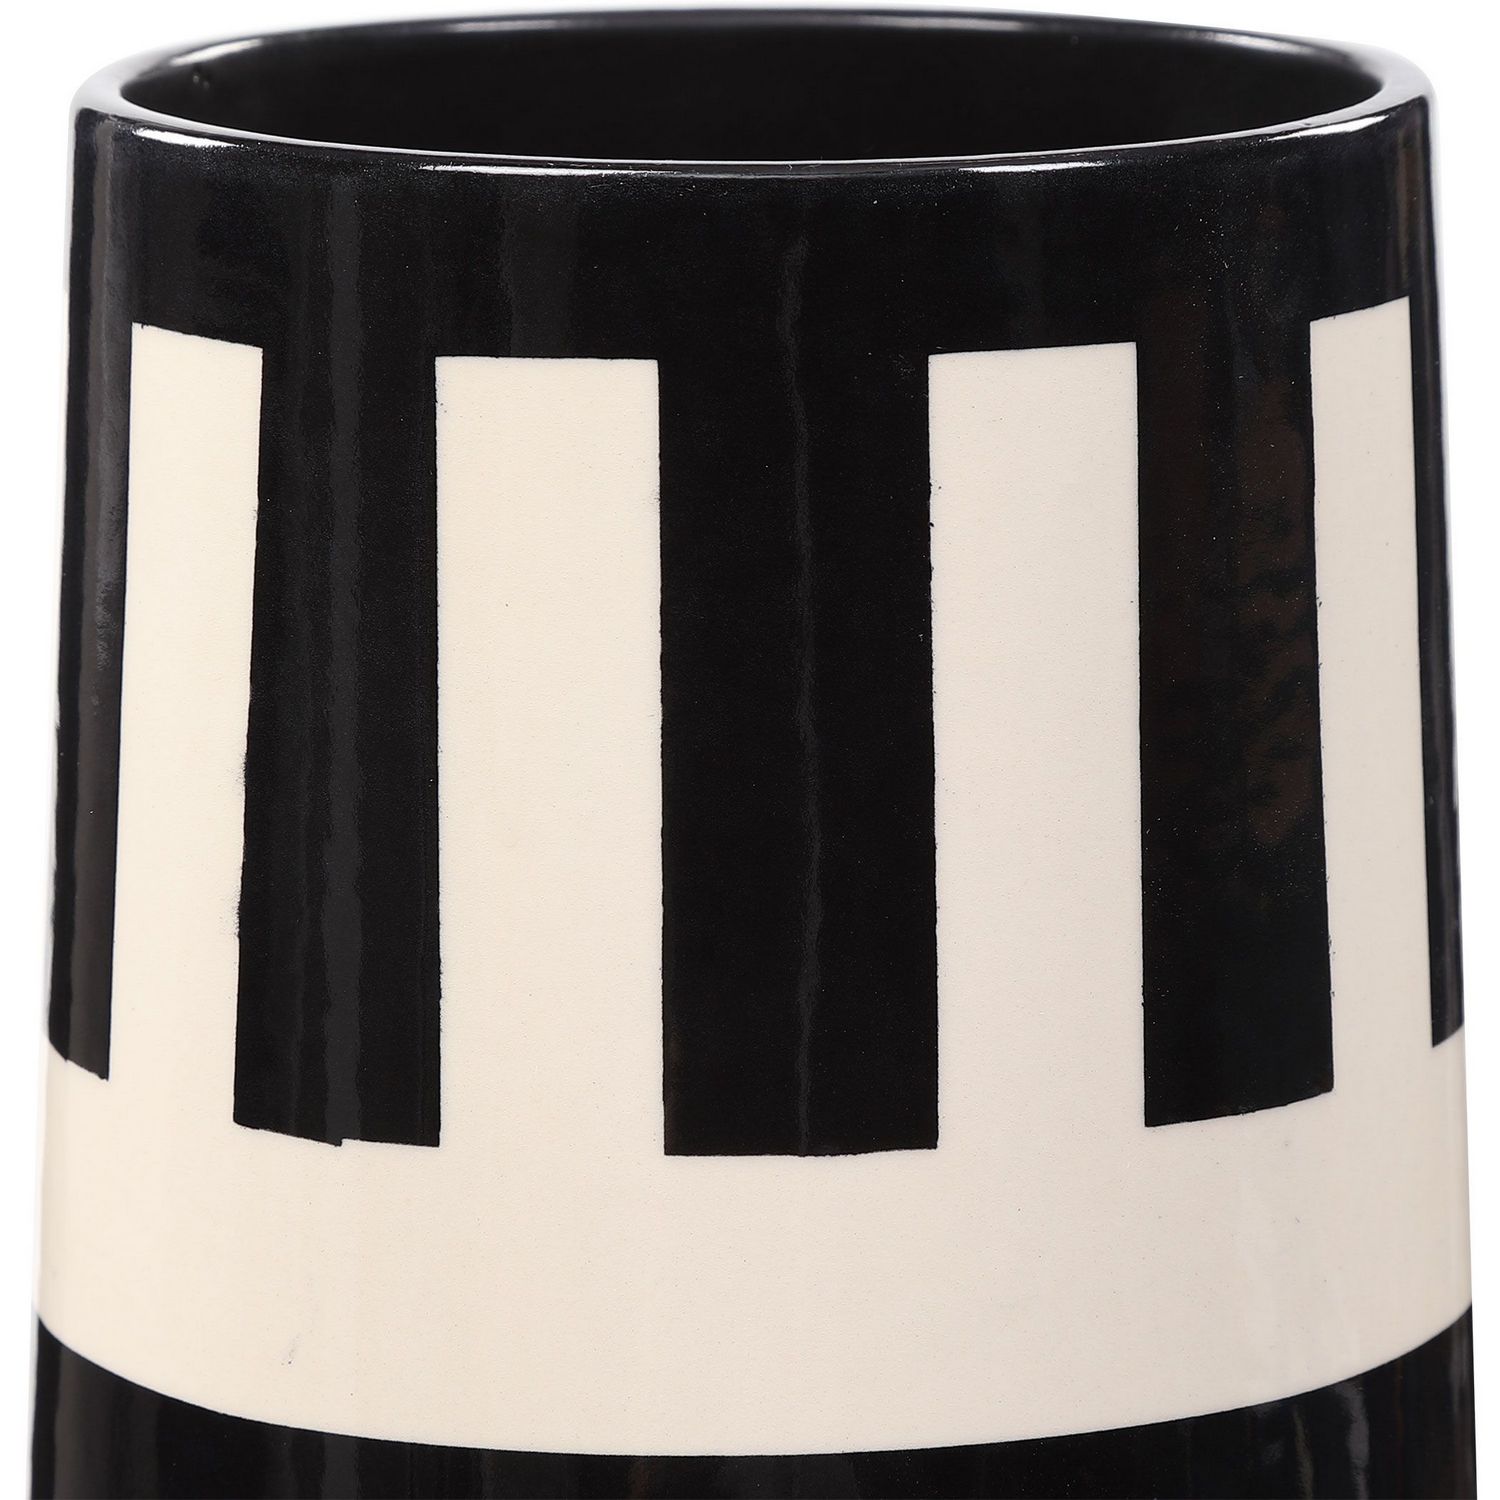 Uttermost Amhara Vases - Set of 2 - Black/White